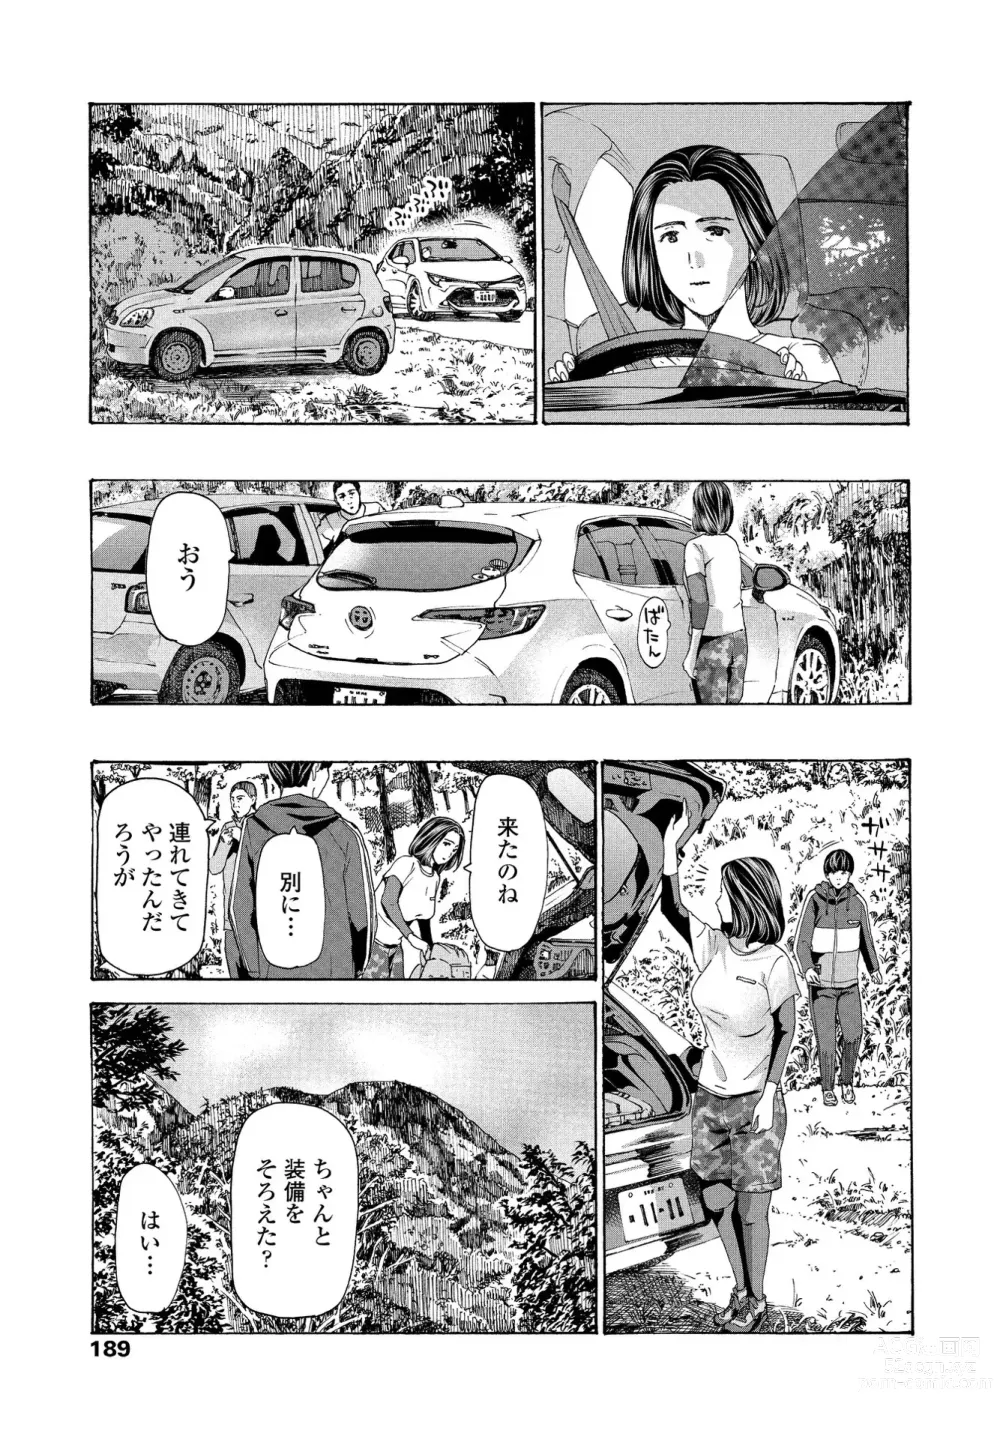 Page 59 of manga Hinangoya nite